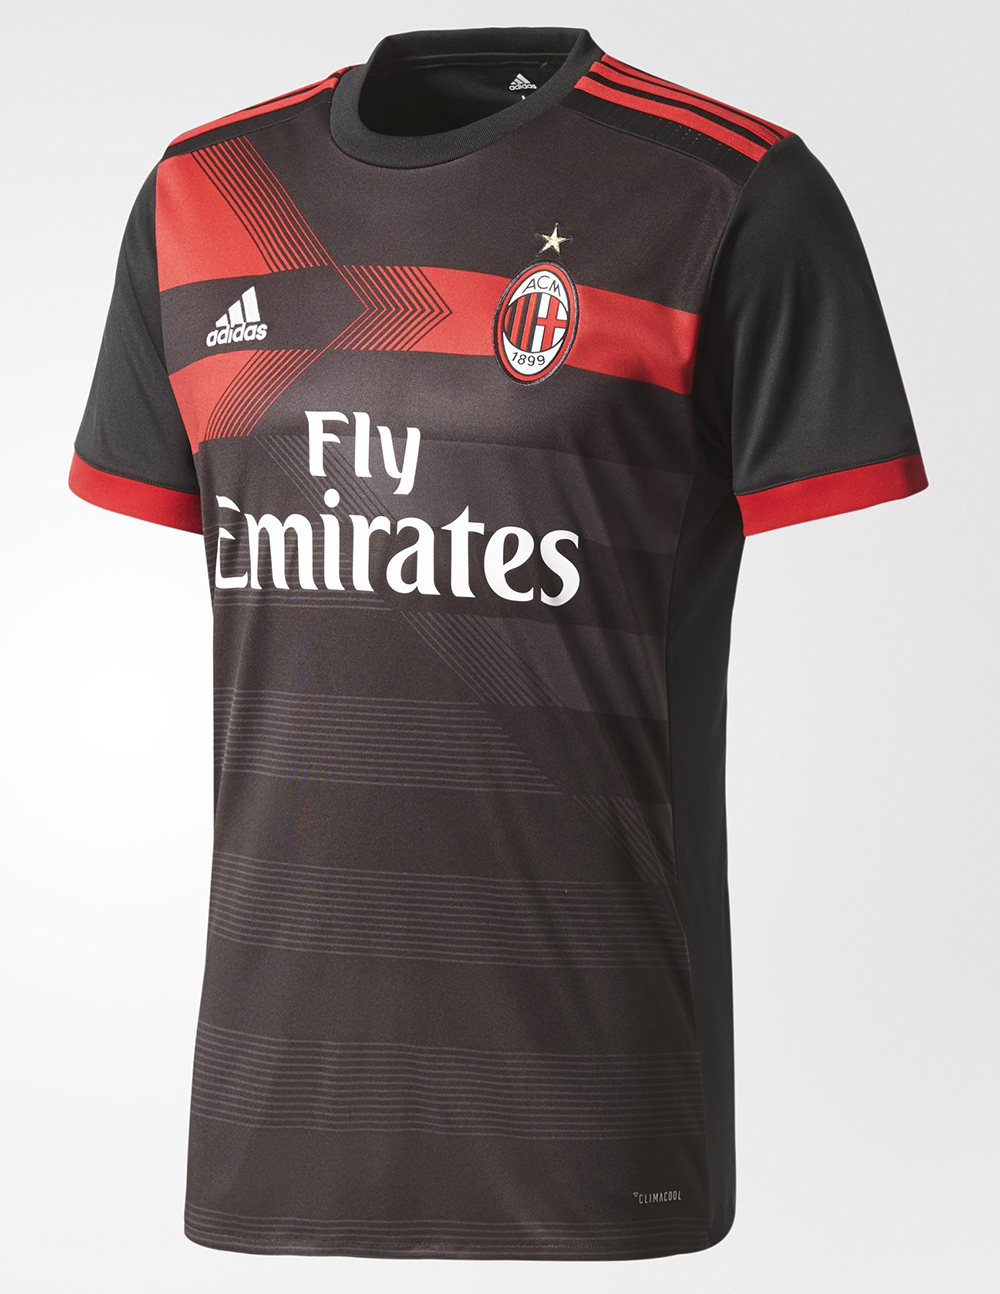 AC Milan adidas Third Kit 2017 18